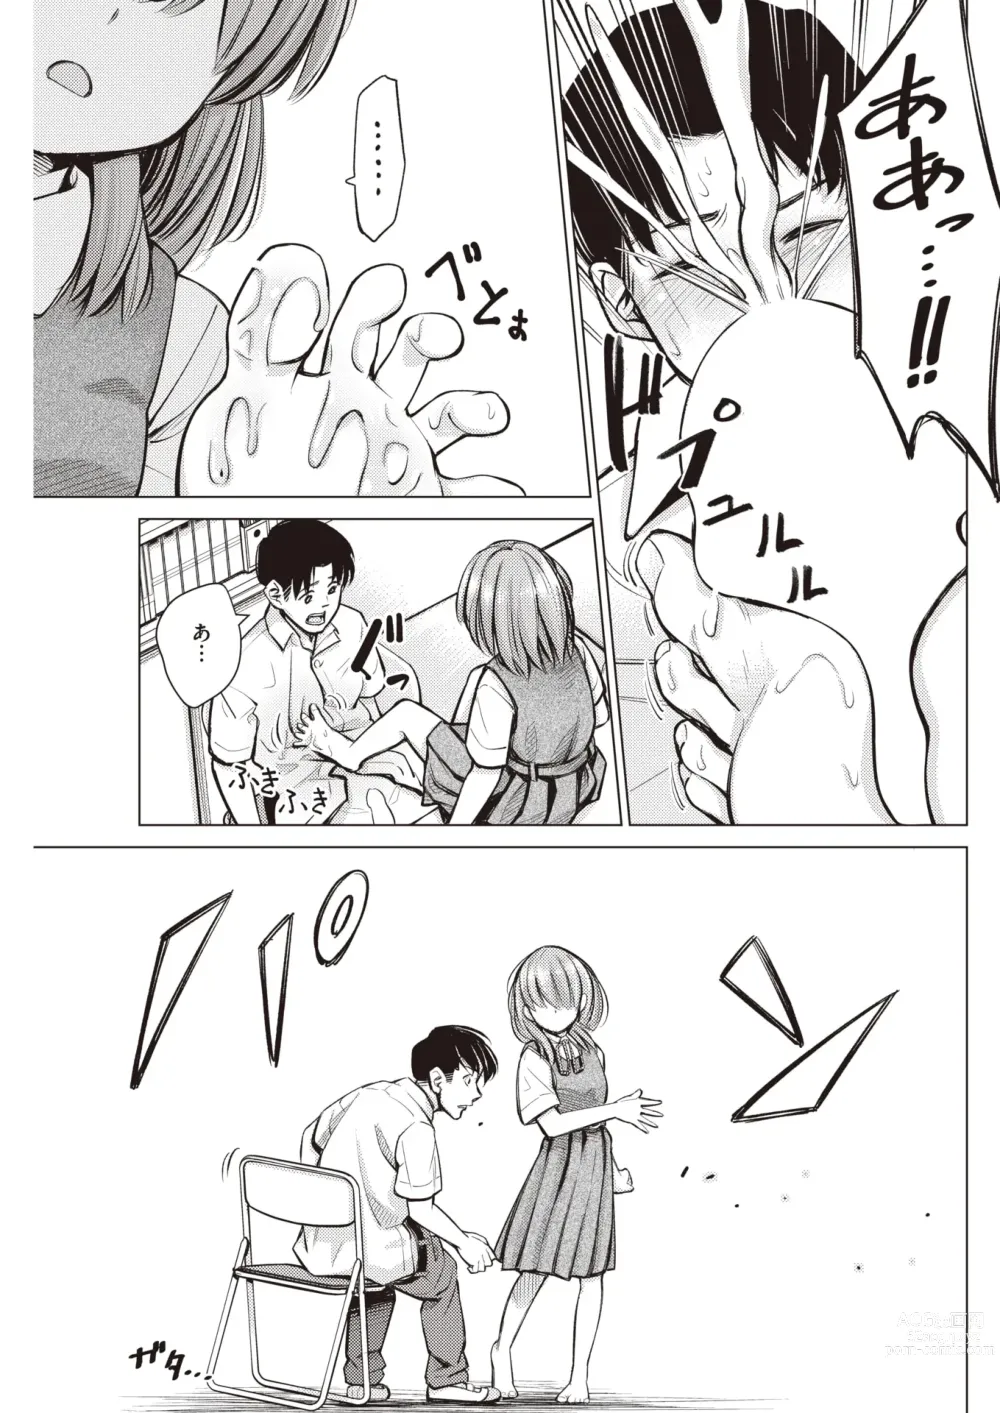 Page 7 of manga Honne. Mukidashi no Shigyakushin de...